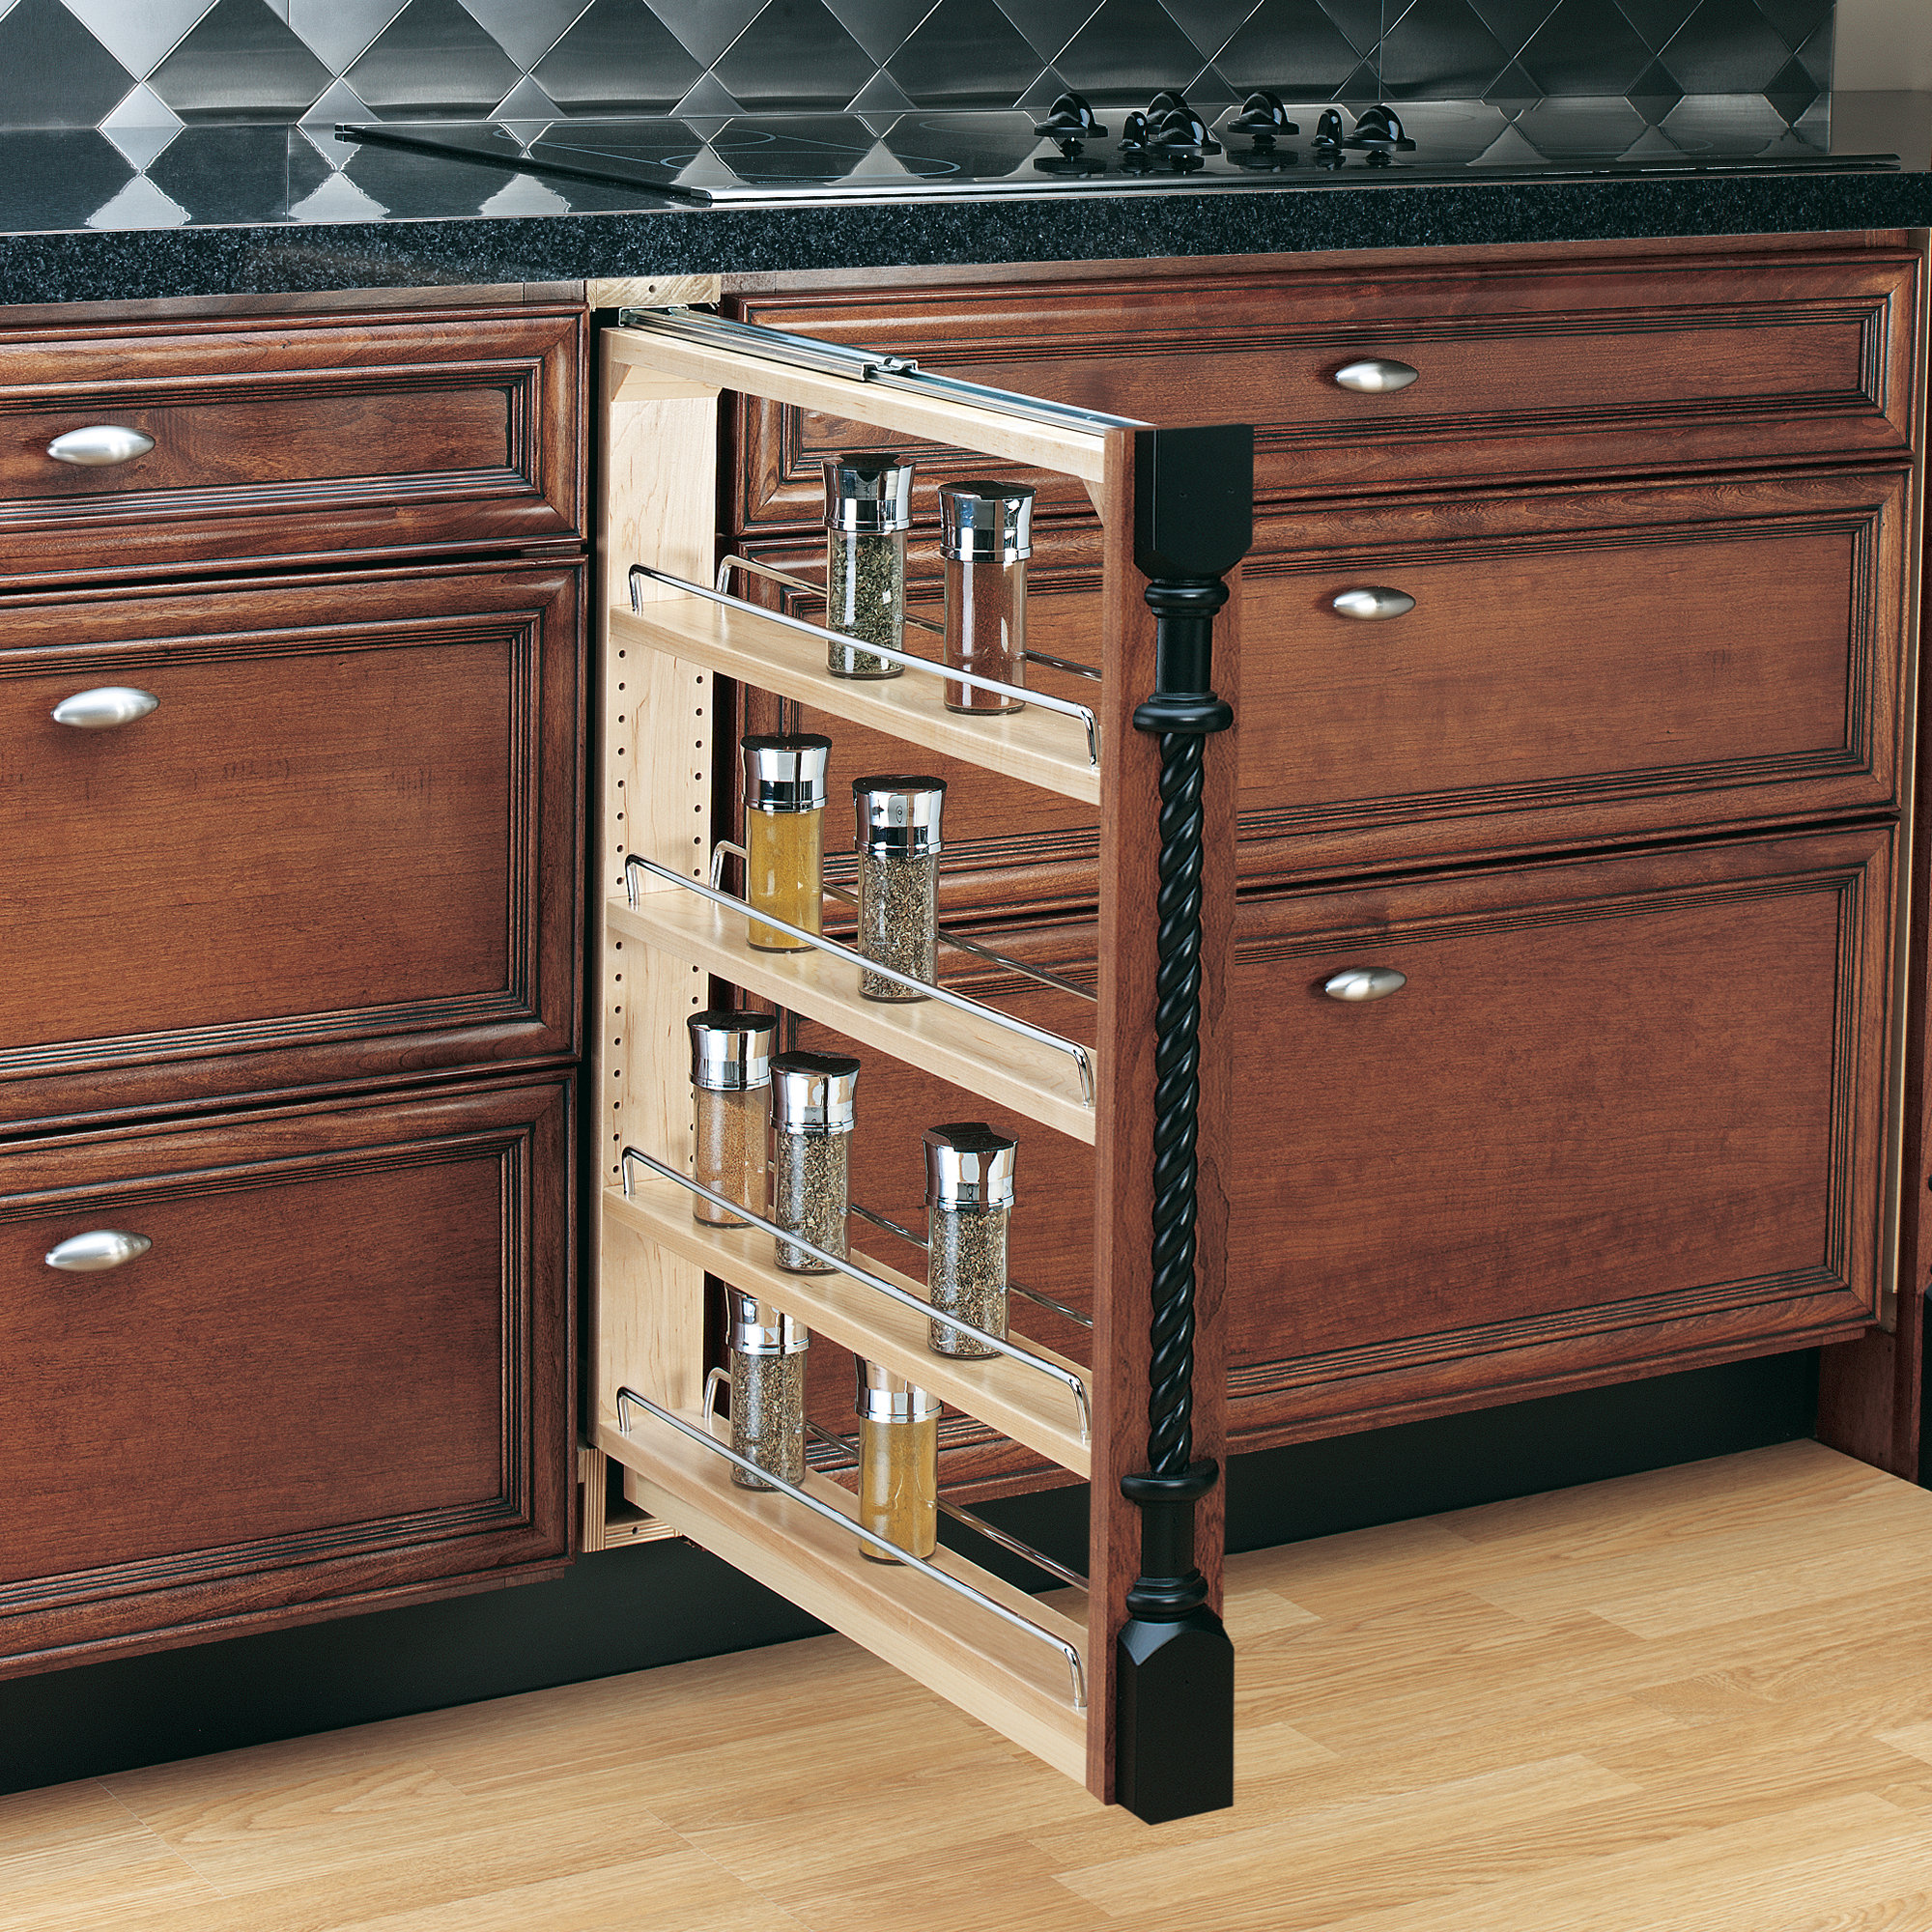 https://assets.wfcdn.com/im/18467426/compr-r85/2409/240967592/rev-a-shelf-cabinet-base-filler-pull-out-organizer-spice-rack.jpg